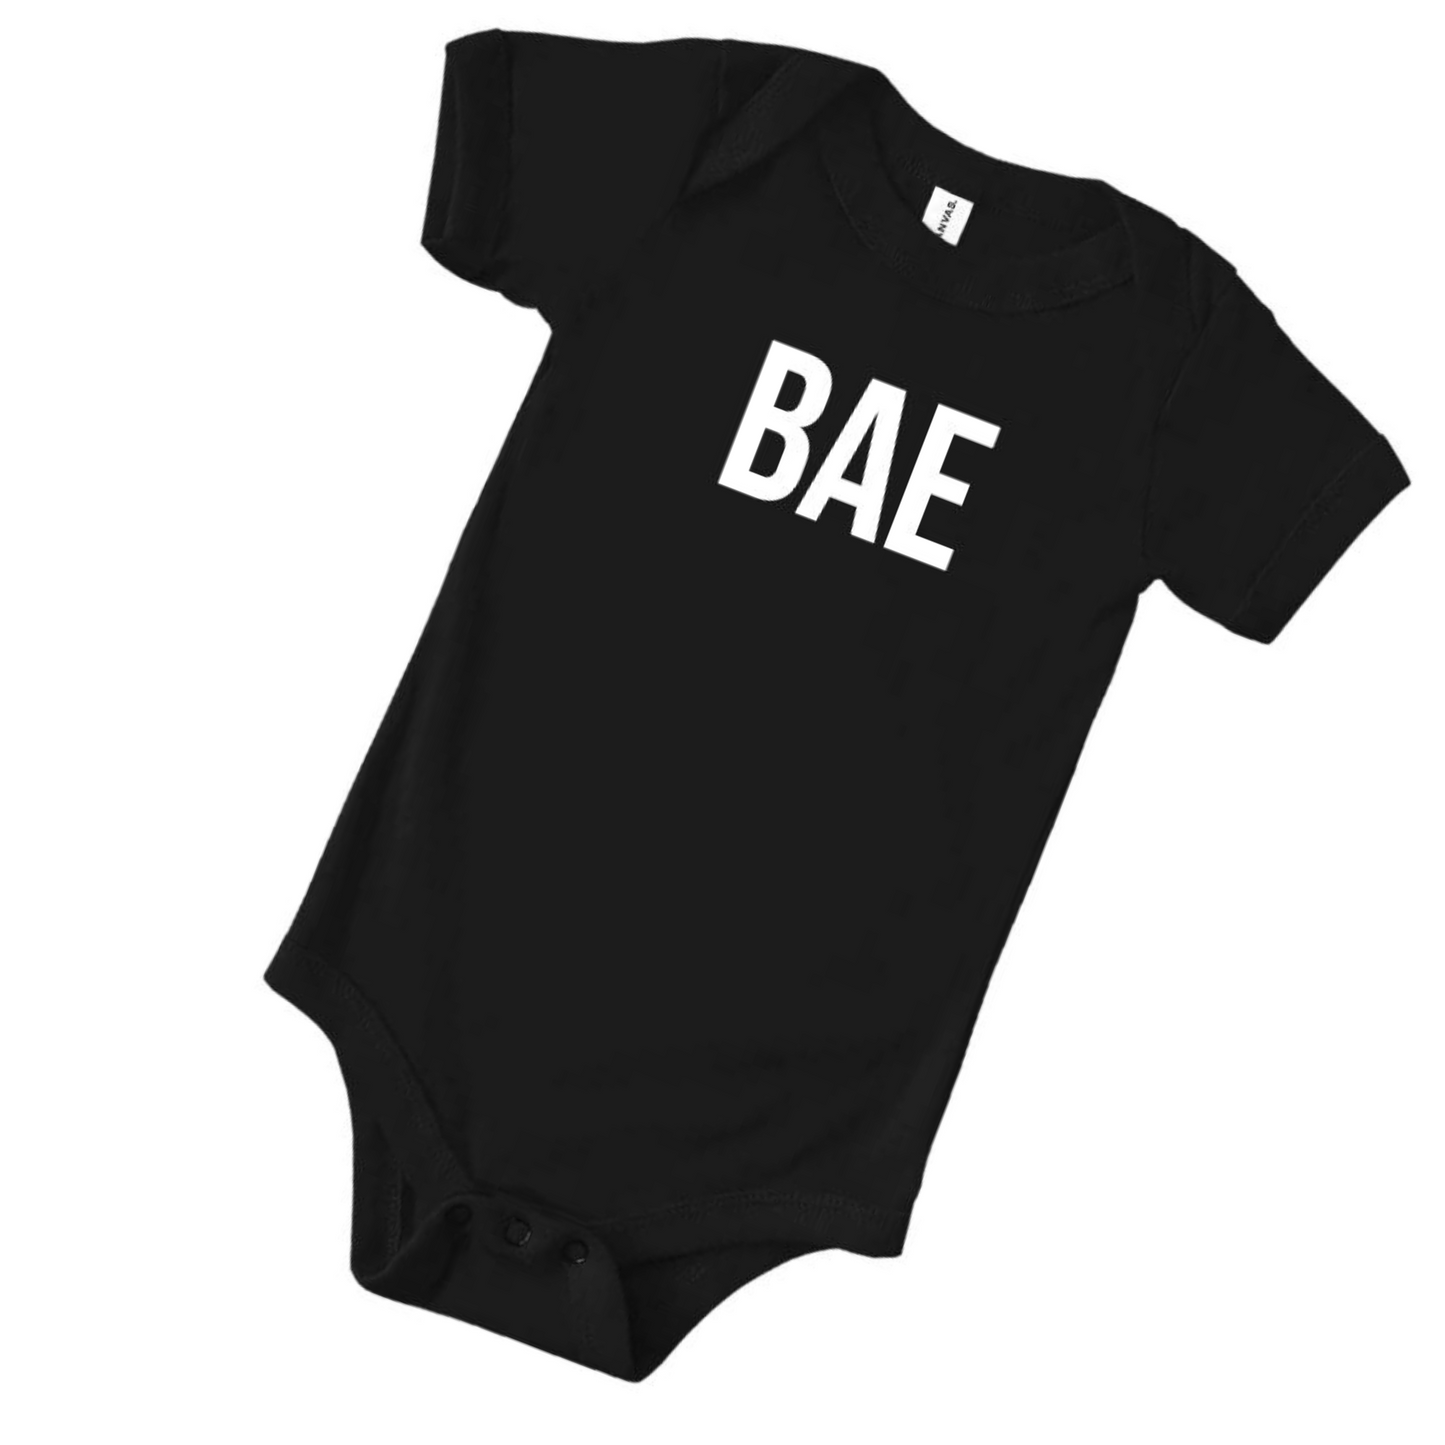 BAE Graphic Bodysuit, Black